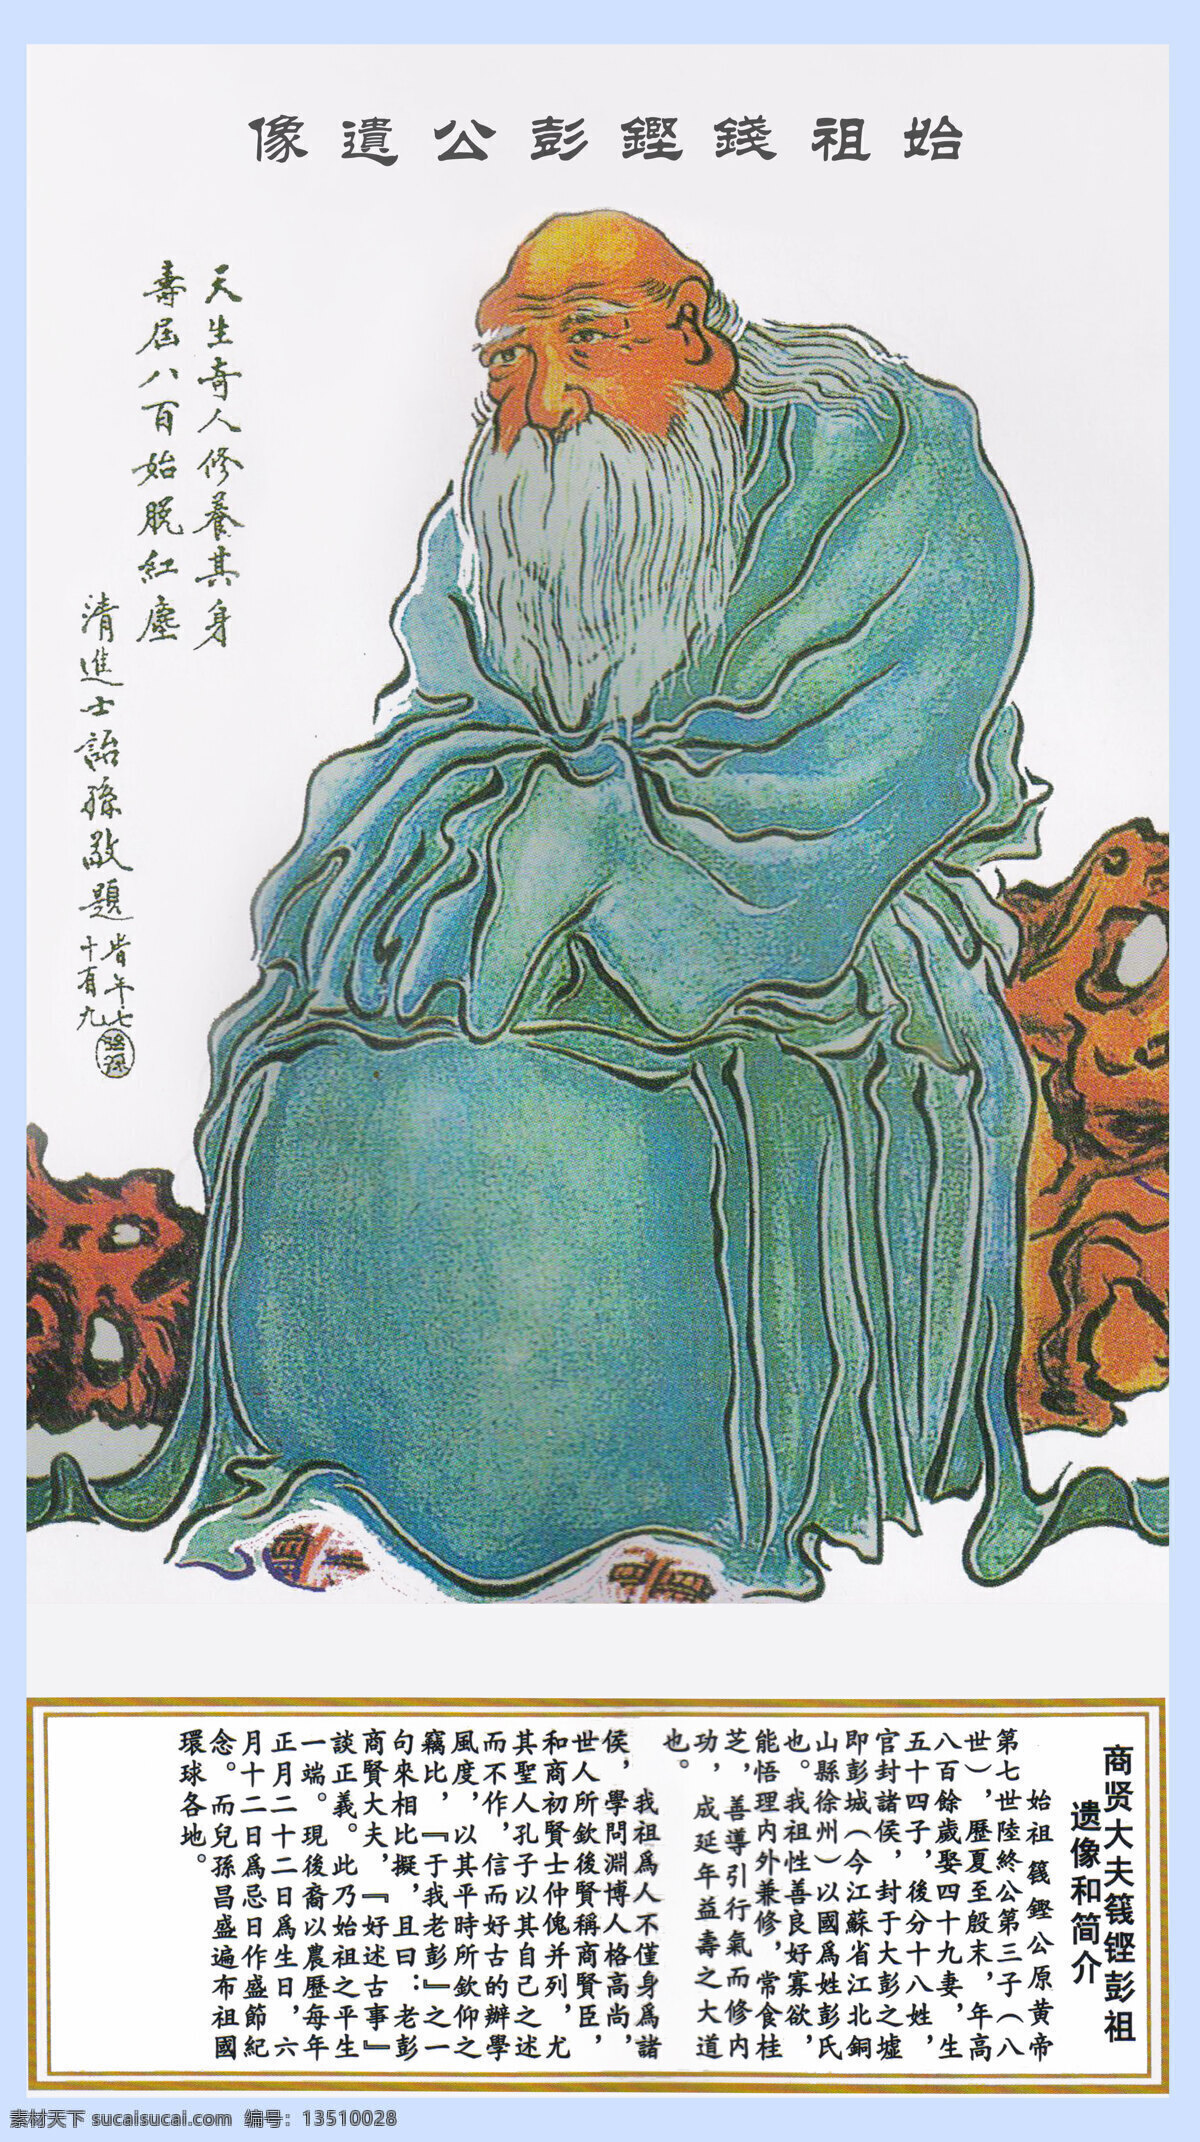 彭祖肖像 彭祖 肖像 八百岁 祖先 宗族 长寿 人物图库